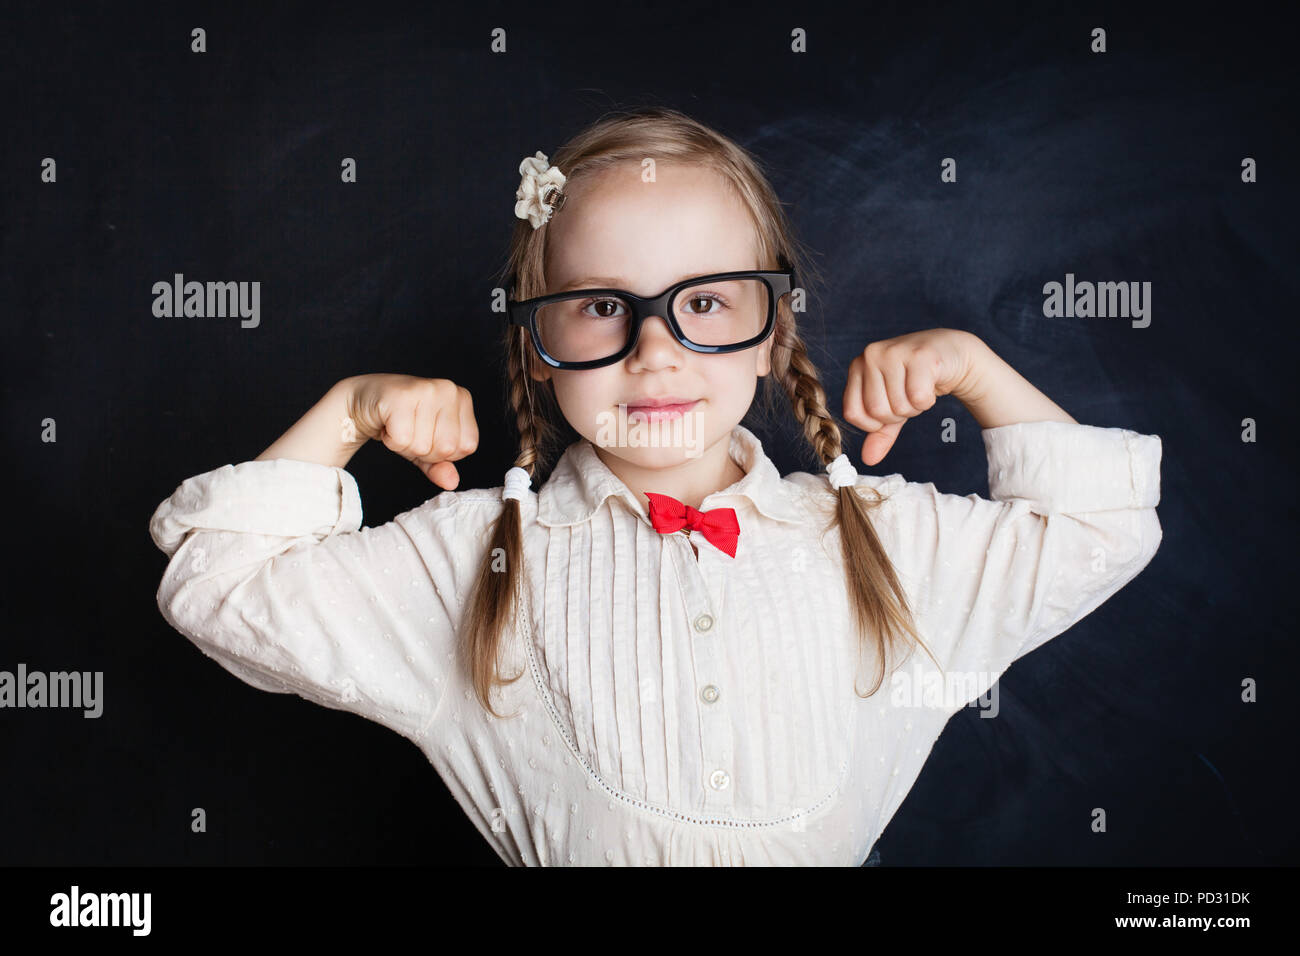 Fröhliches kleines Mädchen in Klasse Zimmer mit Schiefertafel Hintergrund. Zurück zu Schule, School Girl Power, Kreativität und Bildung Konzept Stockfoto